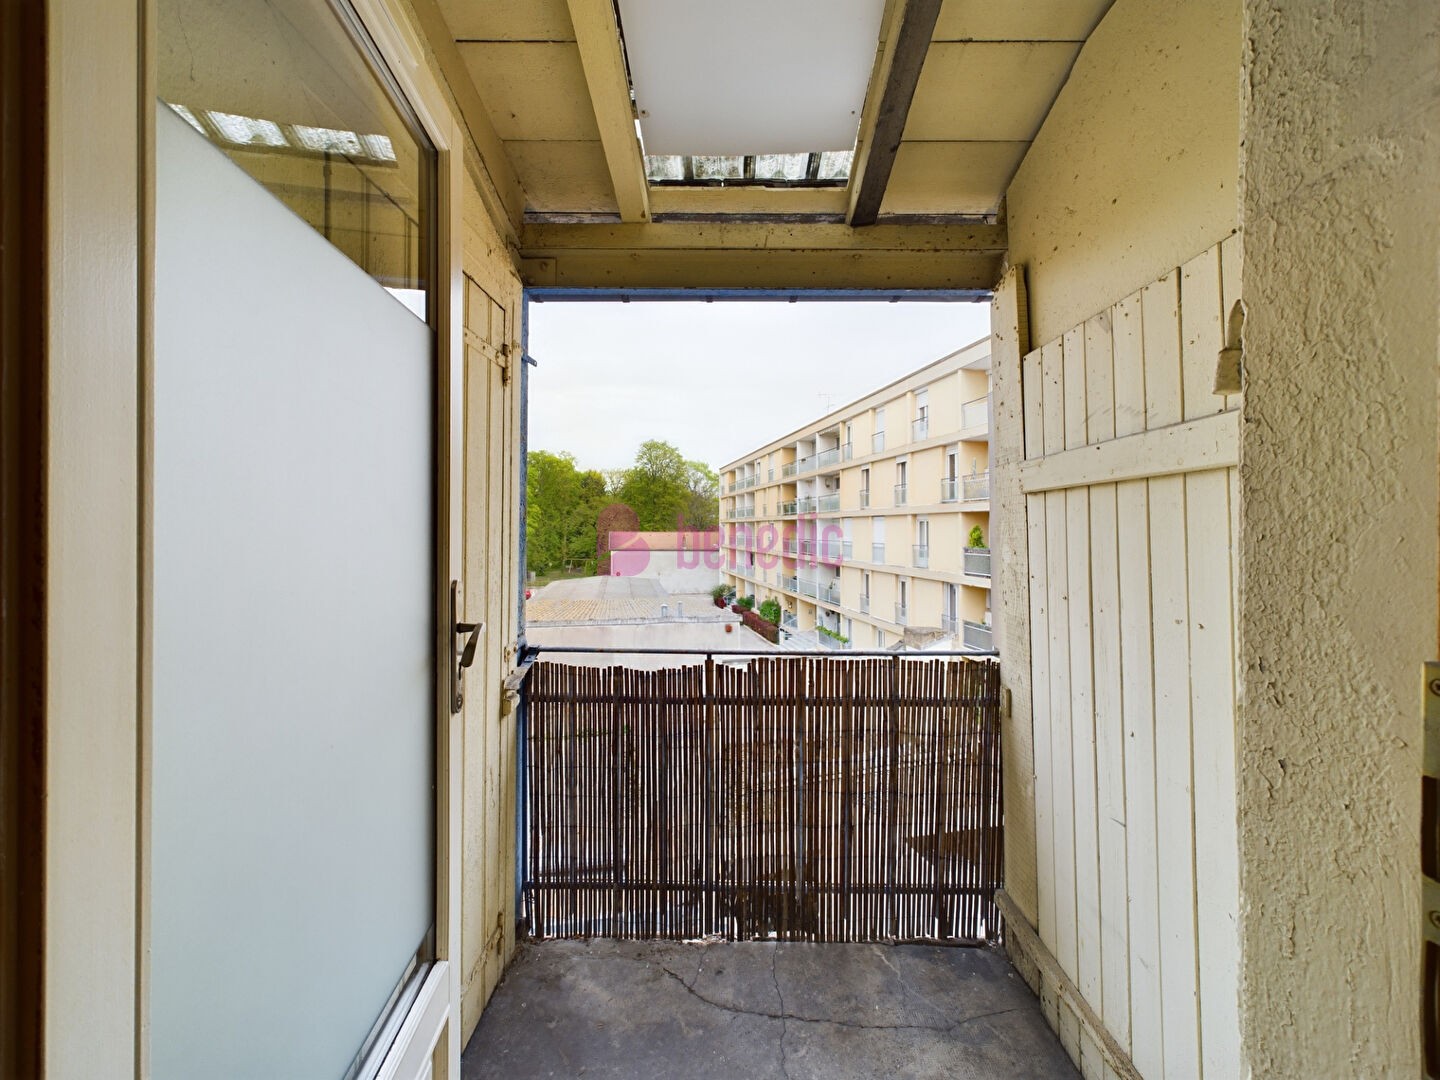 Vente Appartement à Montigny-lès-Metz 2 pièces